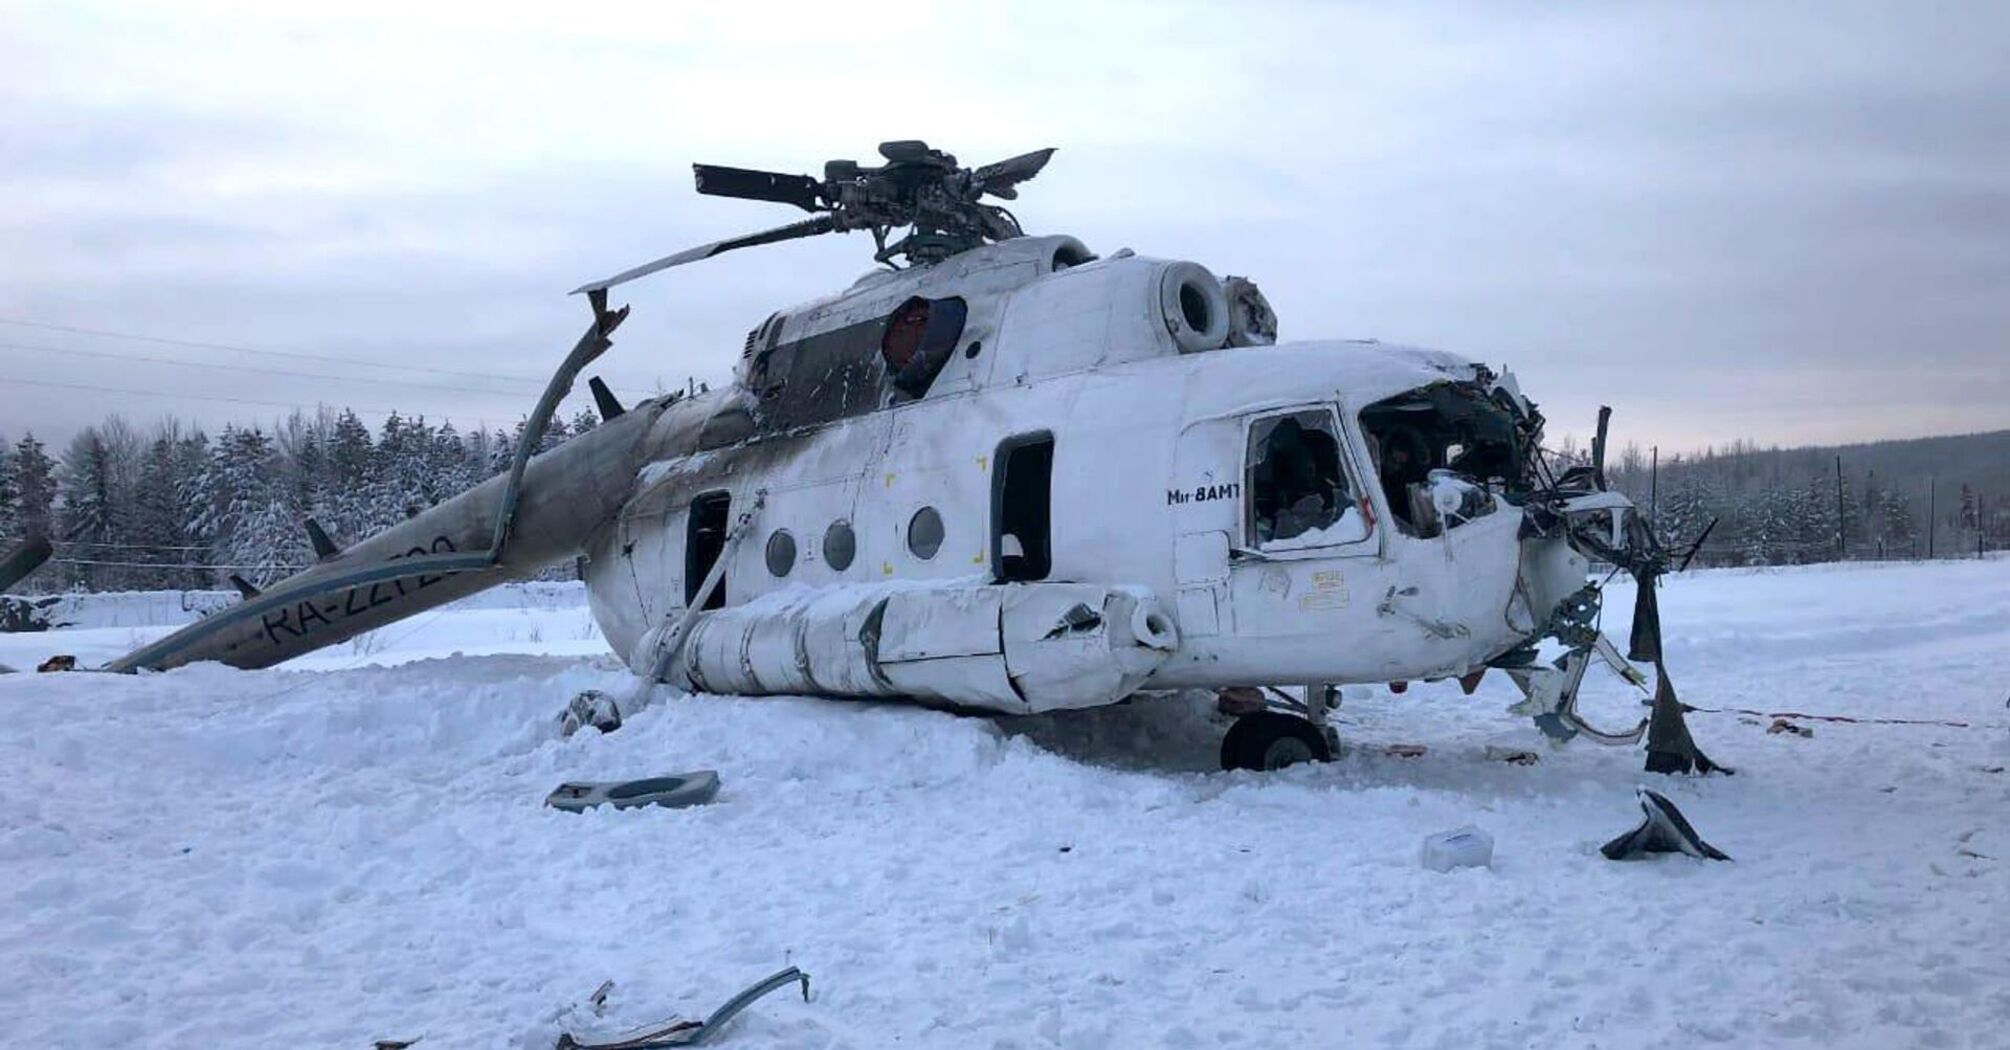 В аеропорту Внуково на росії впав гвинтокрил Мі-8, який перевозив перших осіб держави – ЗМІ